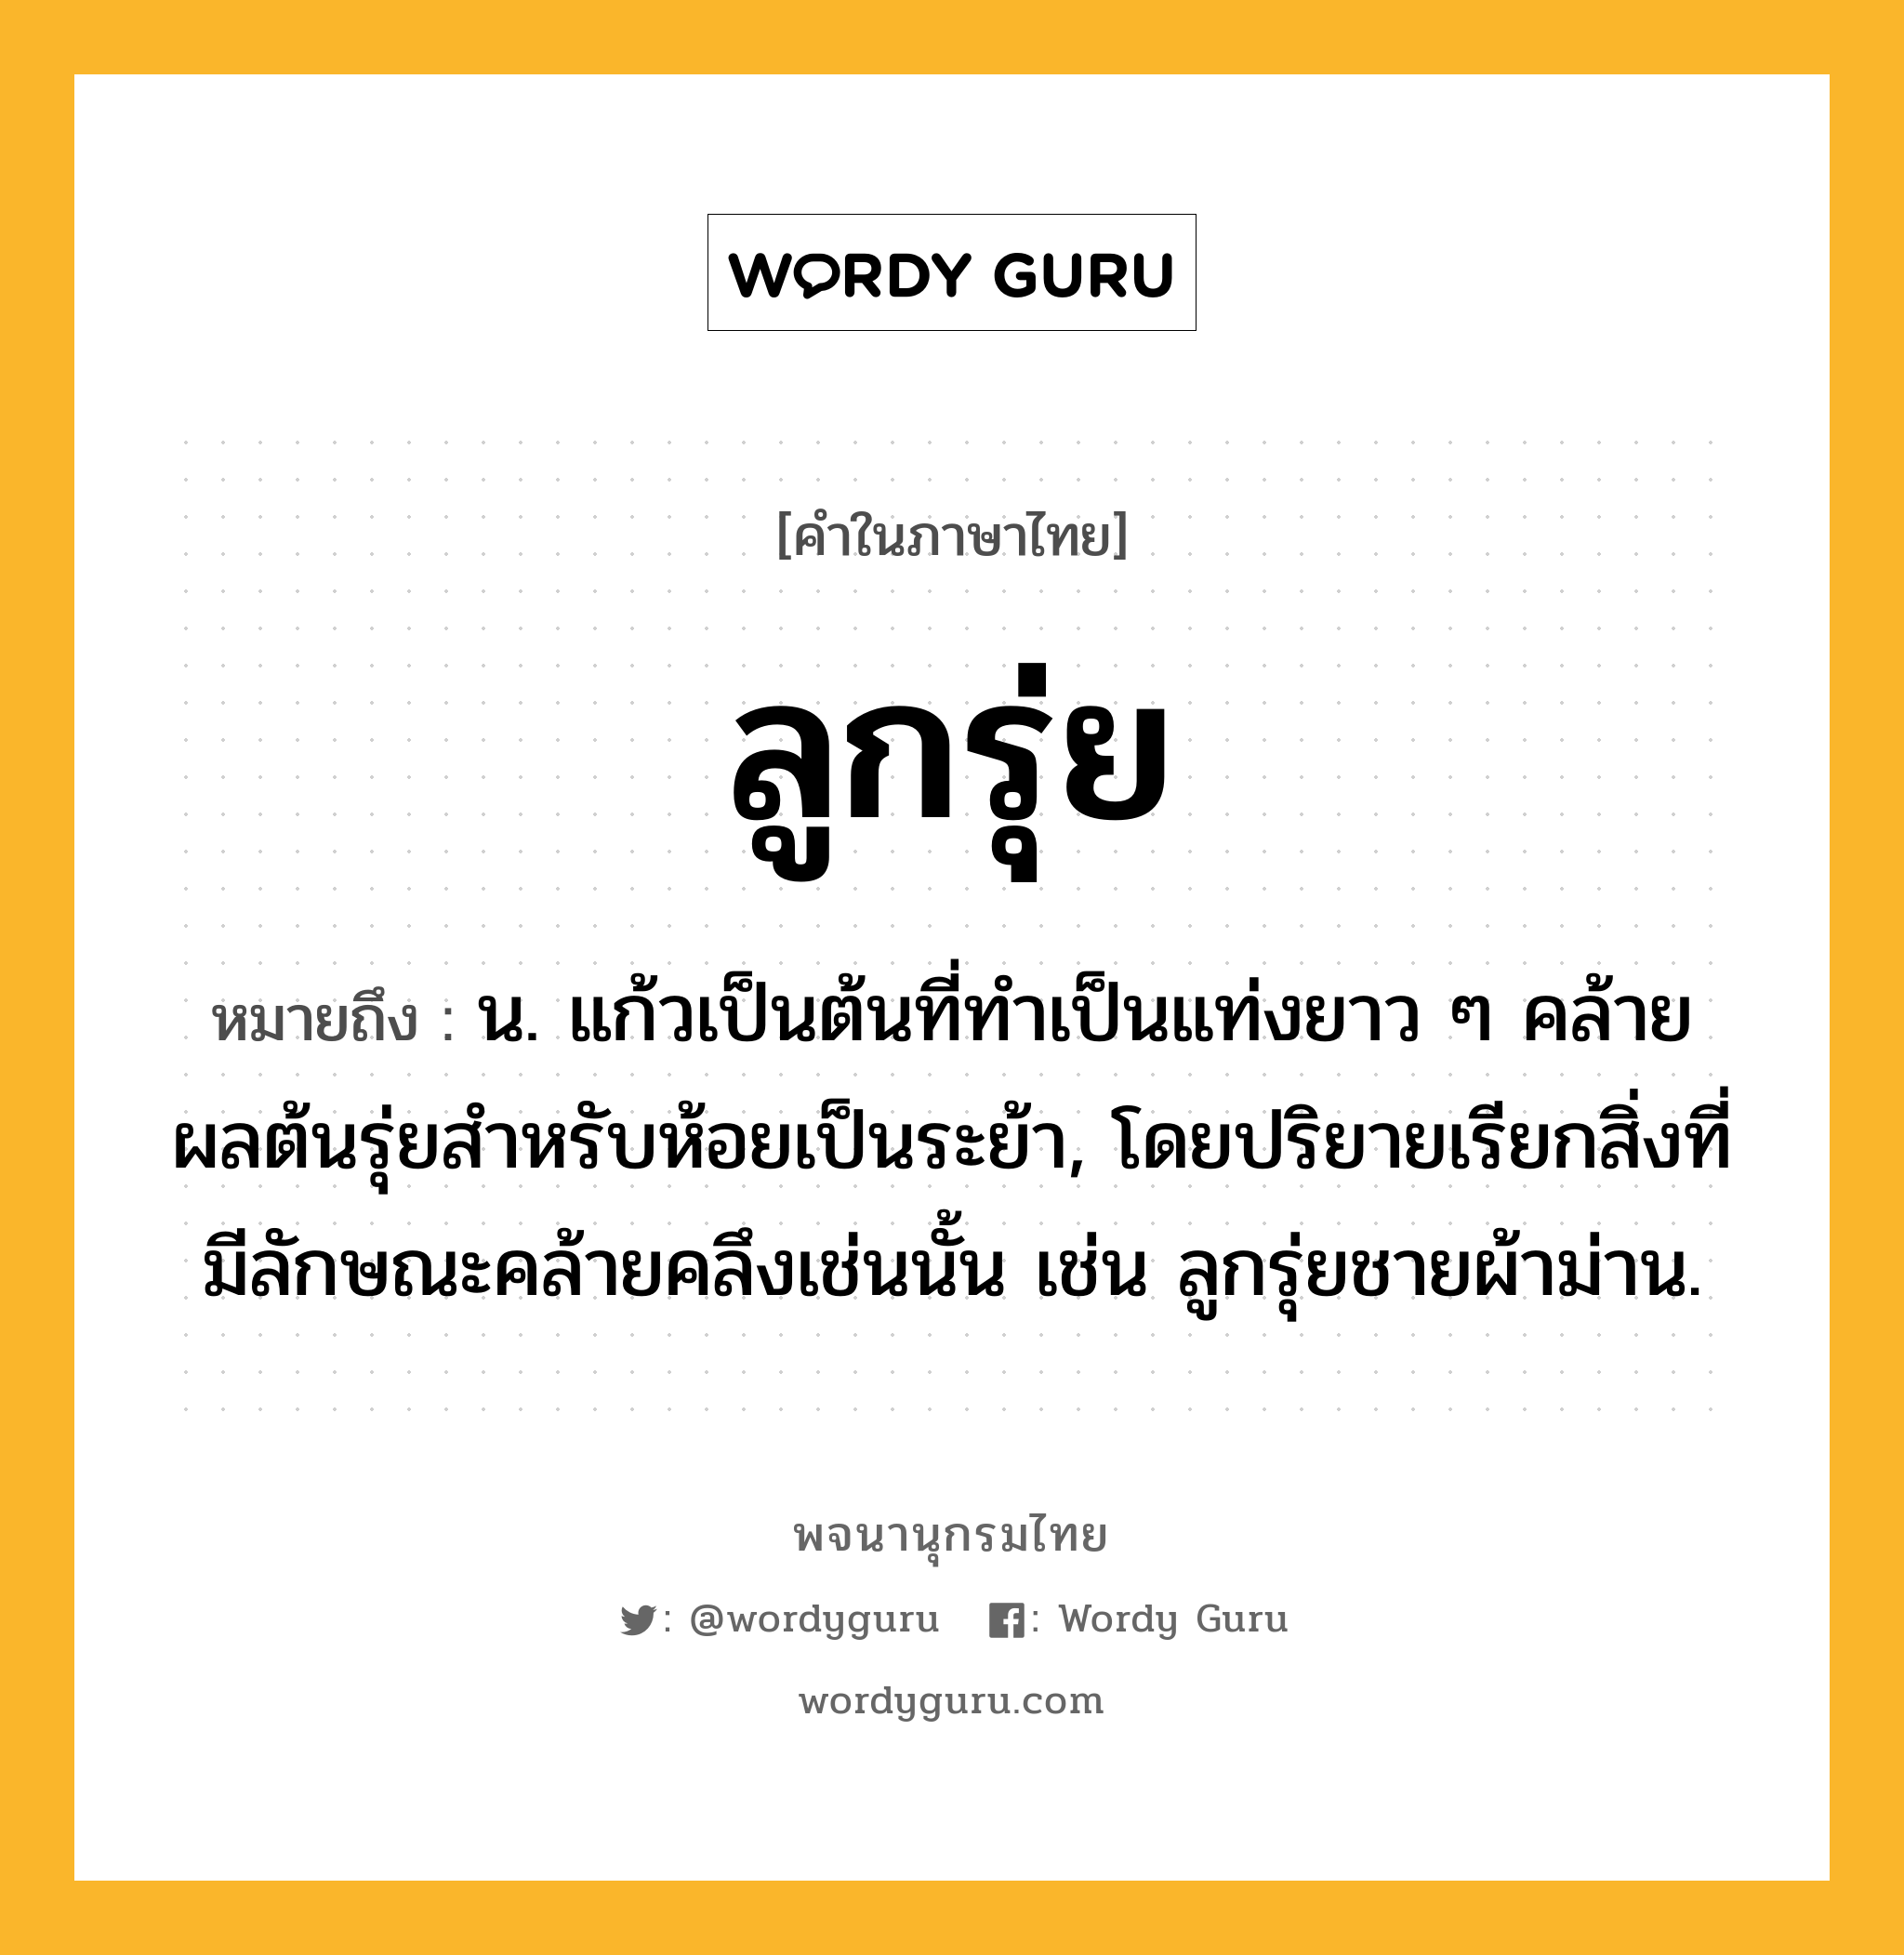 ลูกรุ่ย หมายถึงอะไร?, คำในภาษาไทย ลูกรุ่ย หมายถึง น. แก้วเป็นต้นที่ทําเป็นแท่งยาว ๆ คล้ายผลต้นรุ่ยสําหรับห้อยเป็นระย้า, โดยปริยายเรียกสิ่งที่มีลักษณะคล้ายคลึงเช่นนั้น เช่น ลูกรุ่ยชายผ้าม่าน.